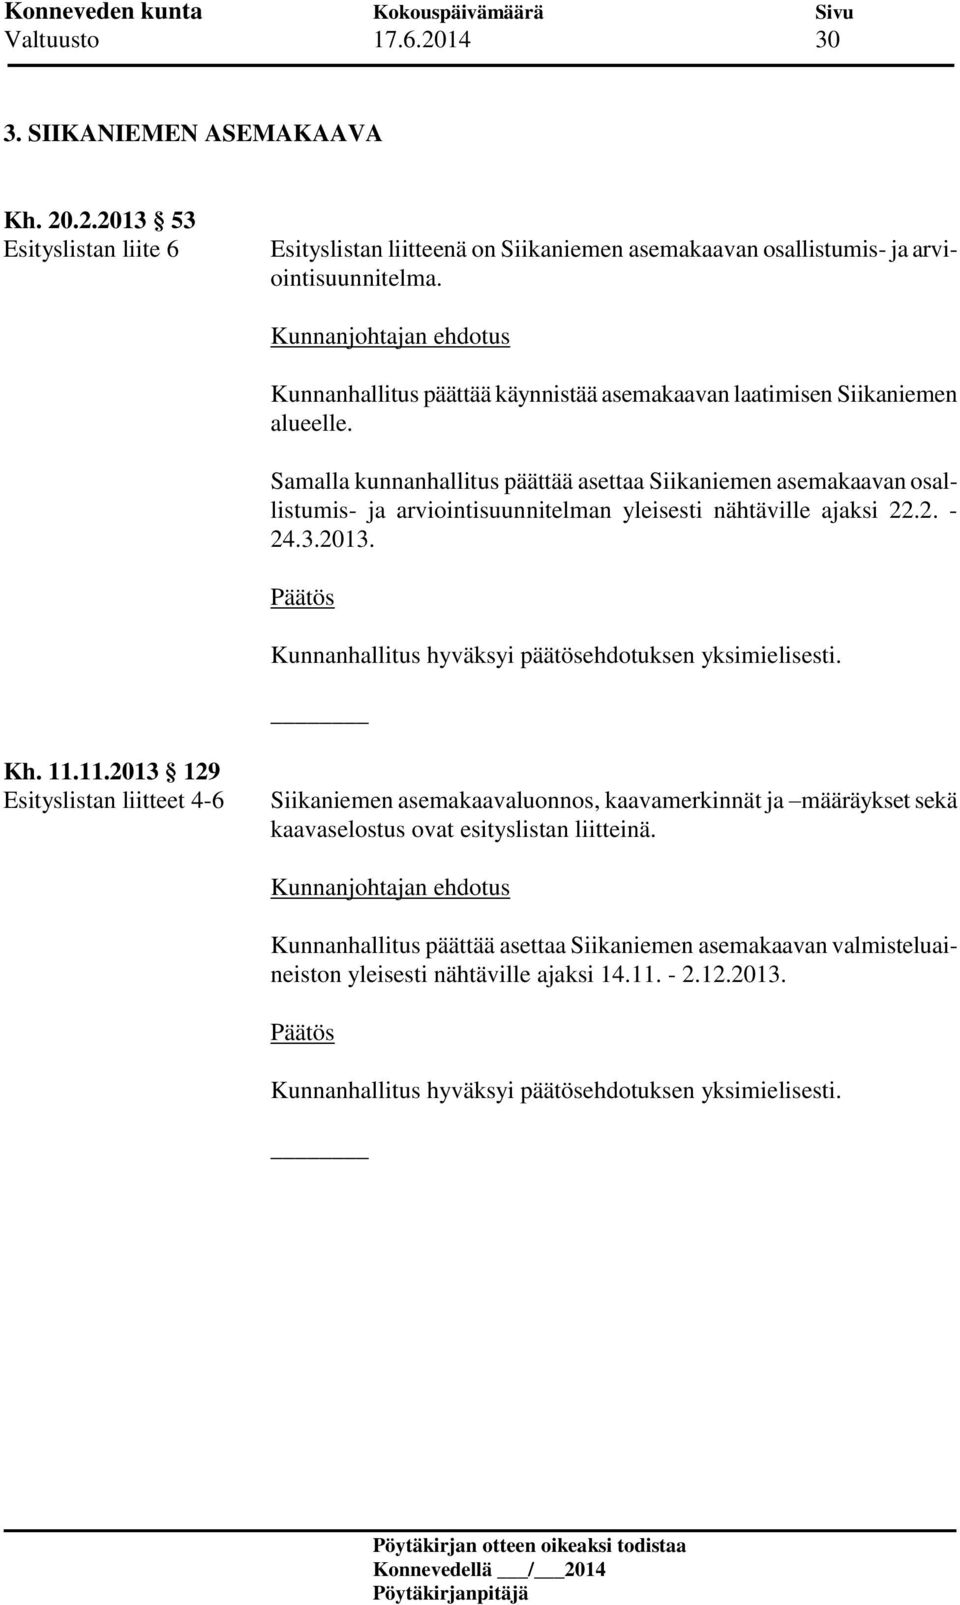 Samalla kunnanhallitus päättää asettaa Siikaniemen asemakaavan osallistumis- ja arviointisuunnitelman yleisesti nähtäville ajaksi 22.2. - 24.3.2013.